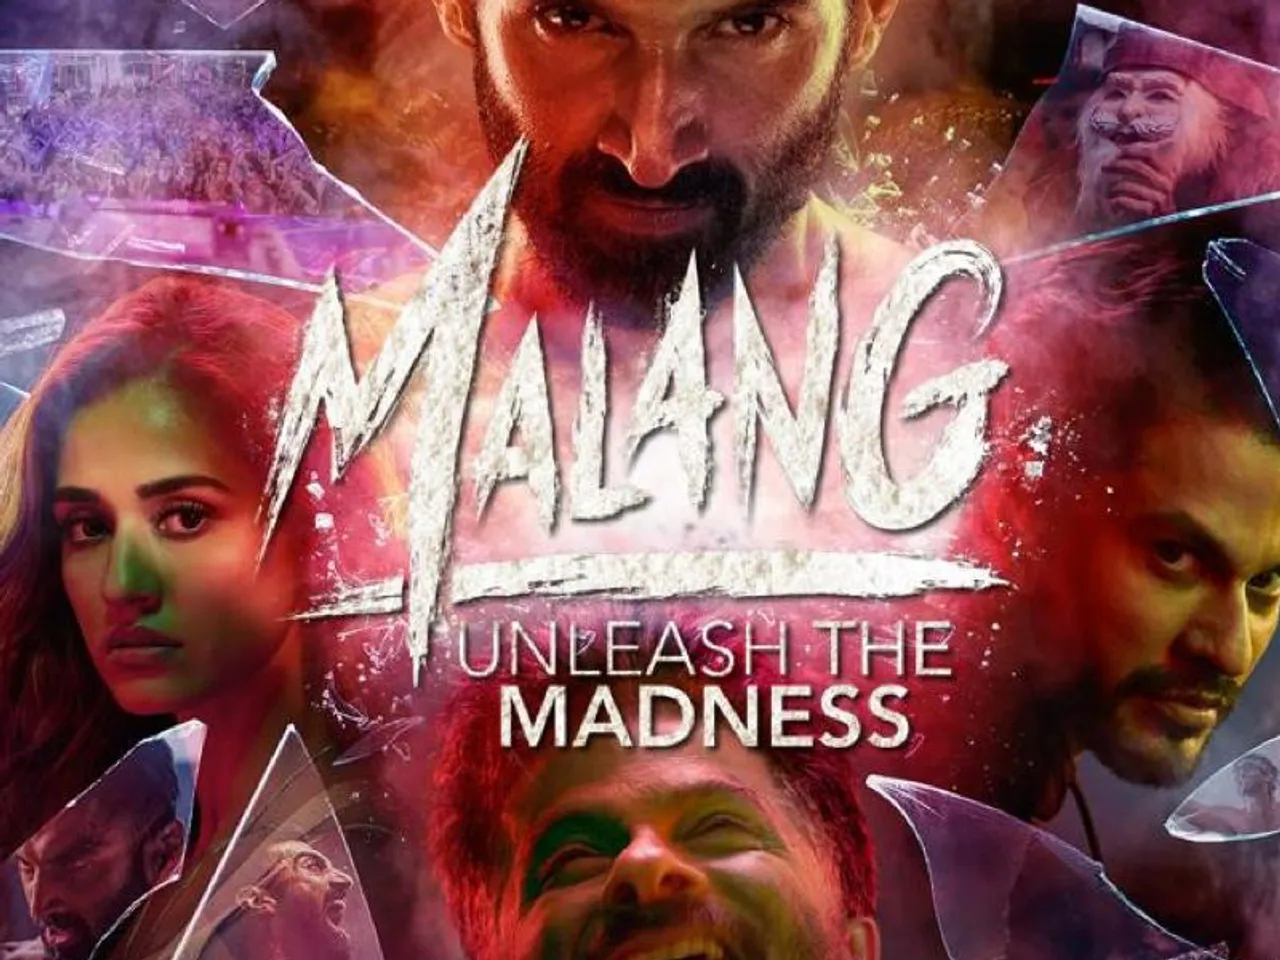 Malang On Netflix / आदित्य रॉय कपूर और दिशा पाटनी स्टारर फिल्म 'मलंग' नेटफिल्क्स पर हुई रिलीज